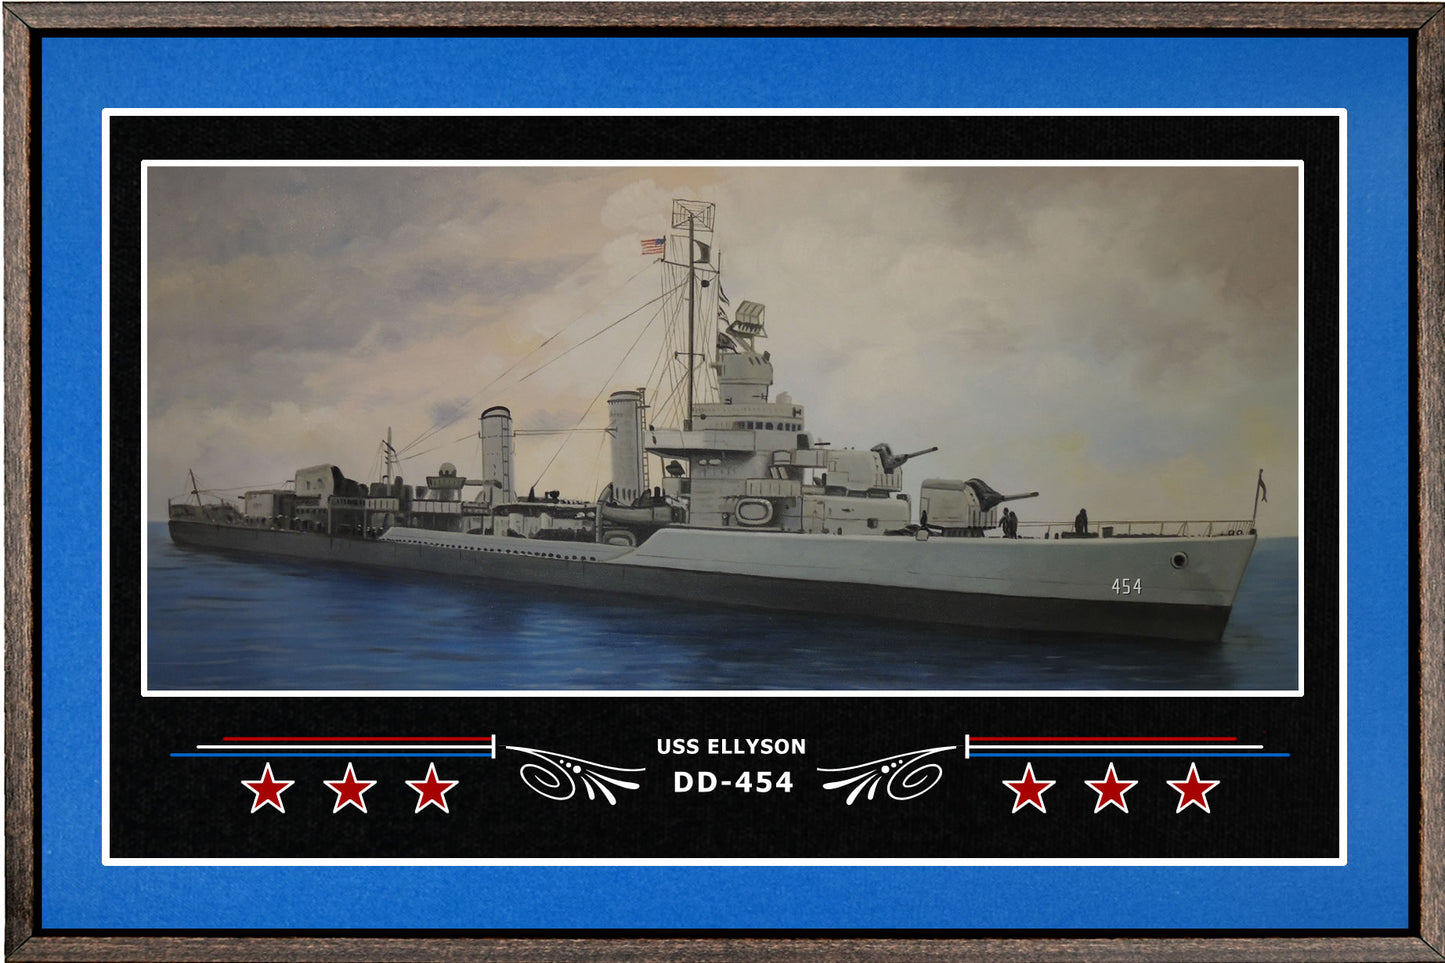 USS ELLYSON DD 454 BOX FRAMED CANVAS ART BLUE